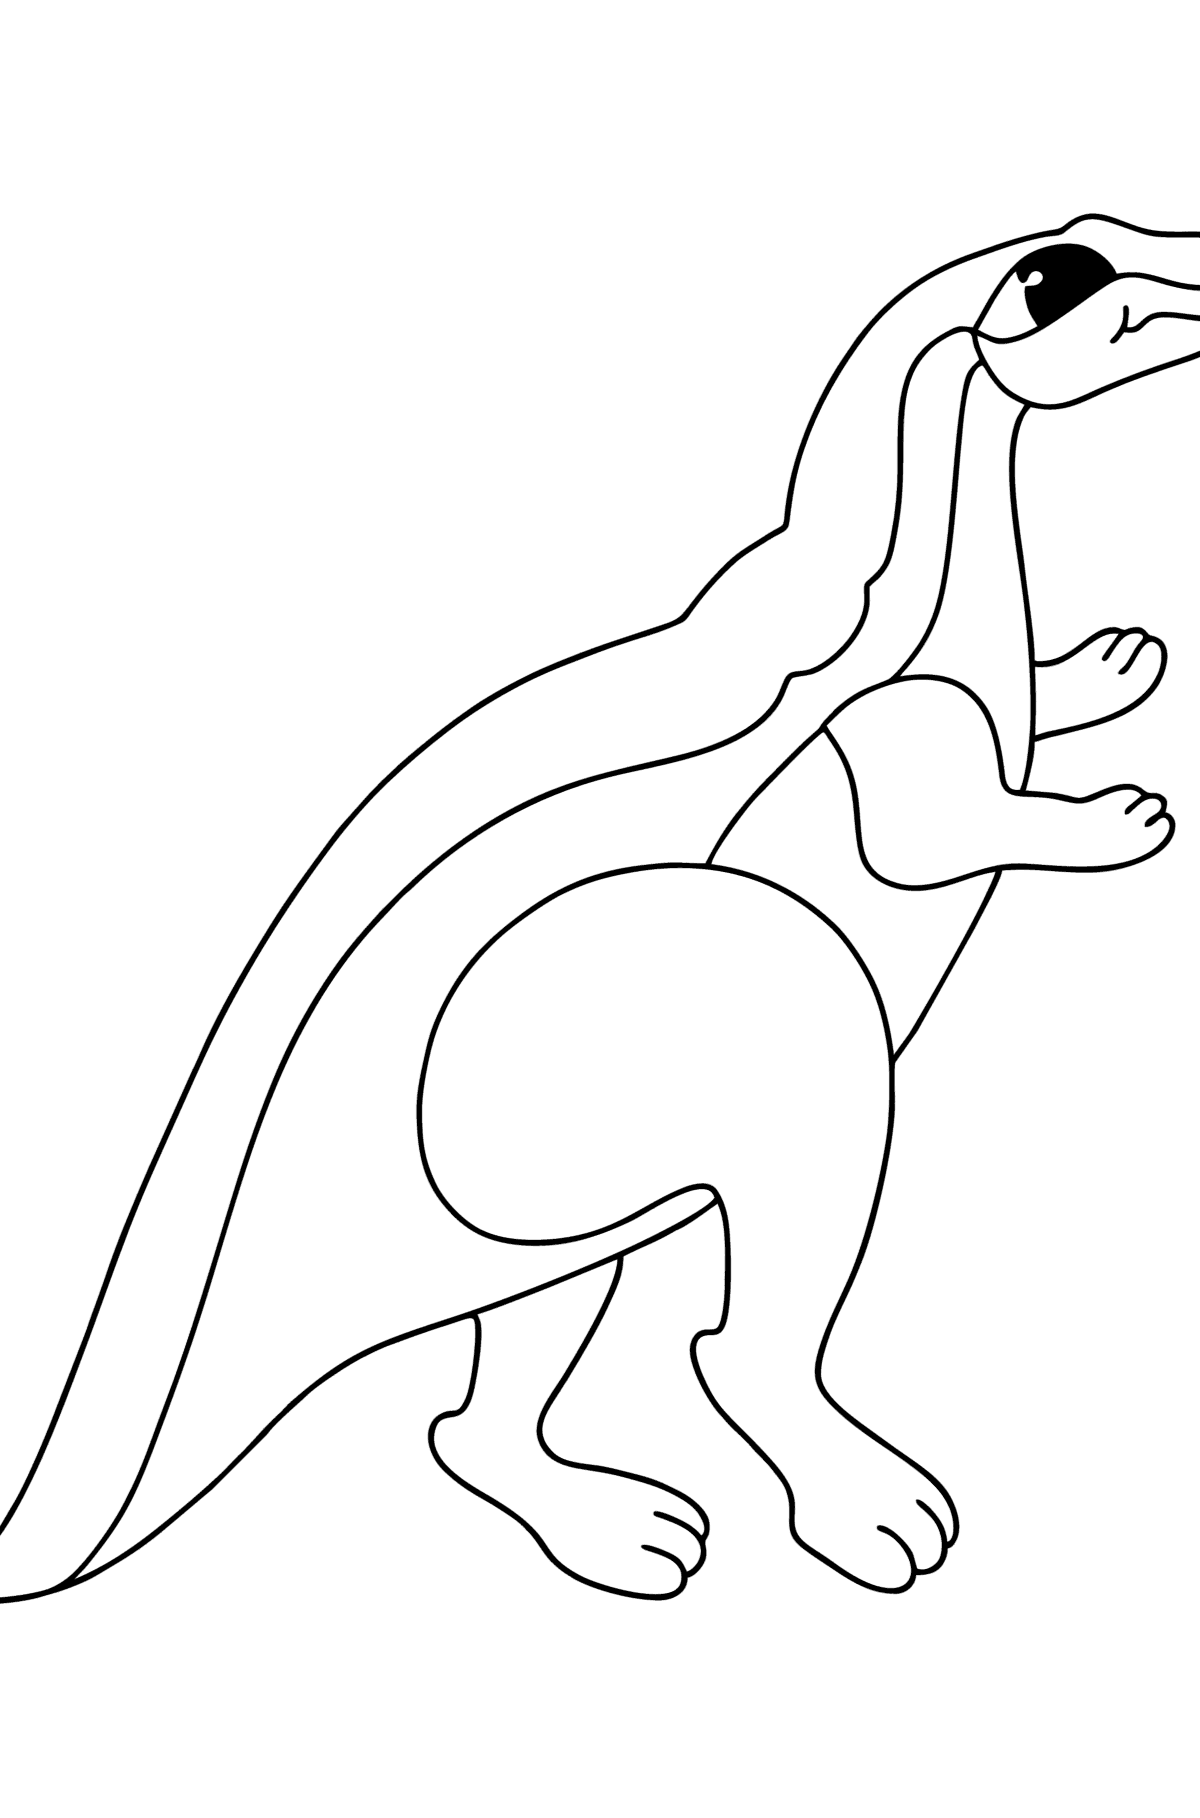 Ausmalbild Agilisaurus - Malvorlagen für Kinder